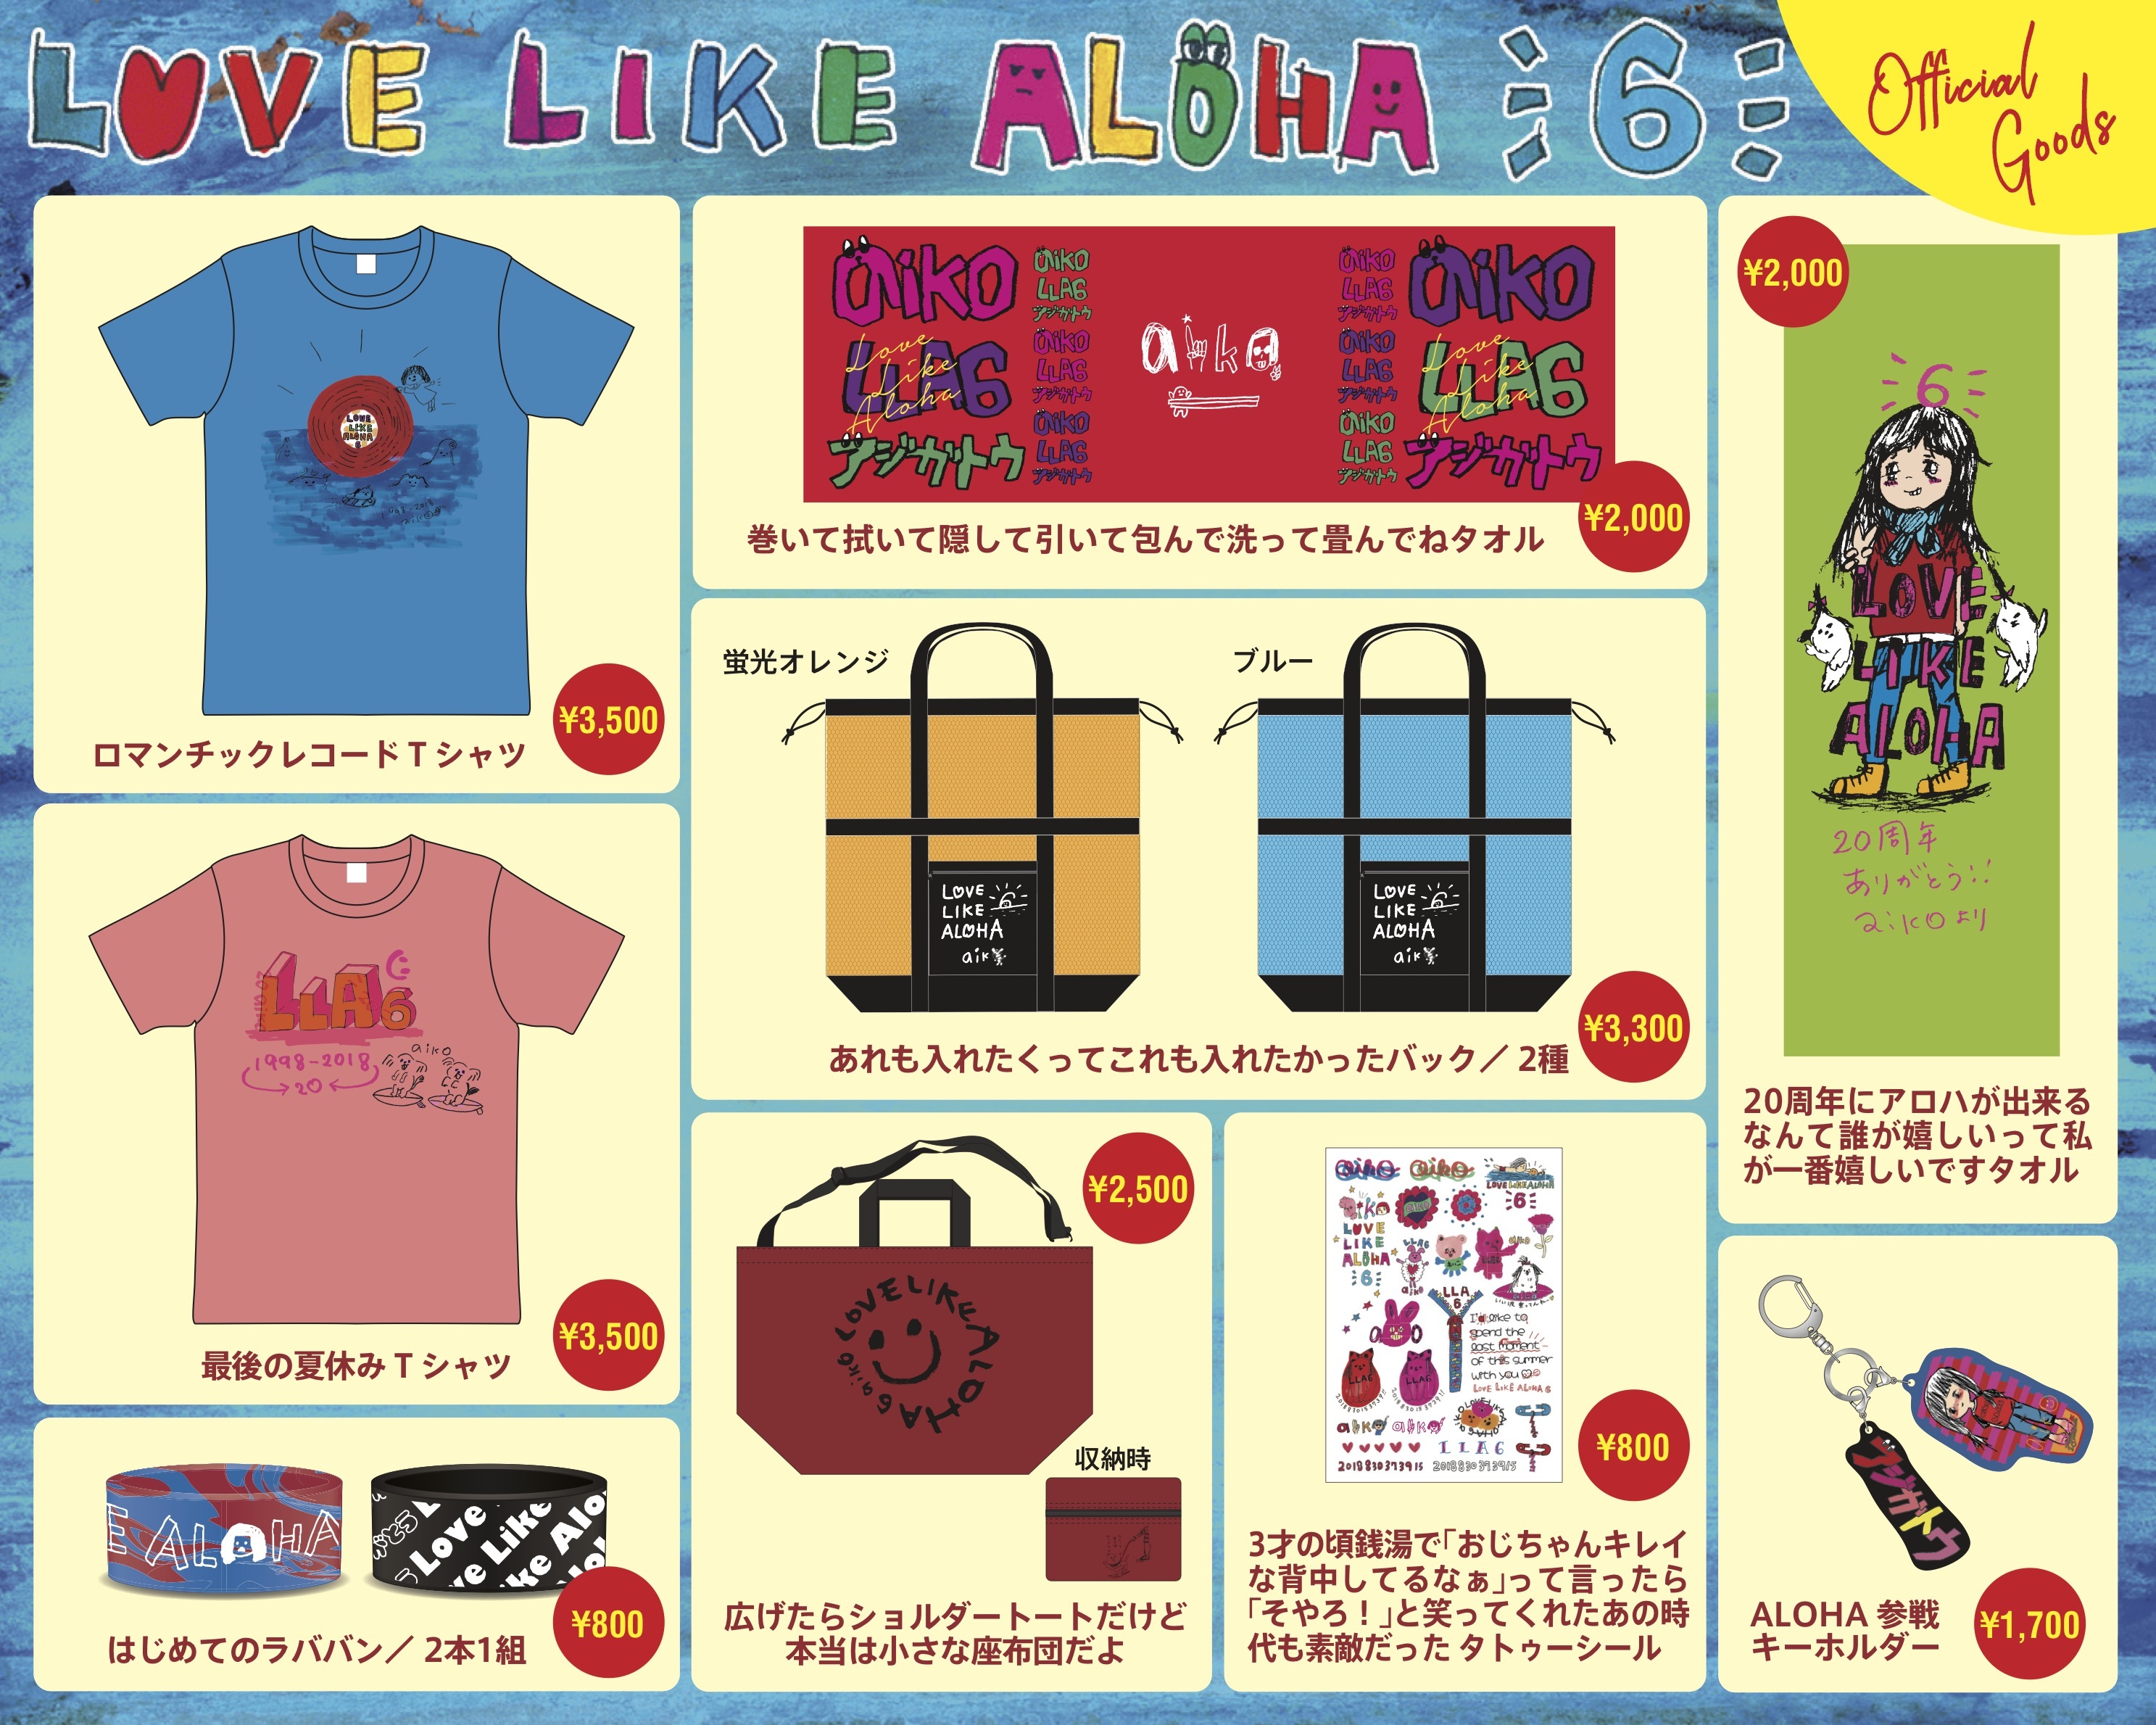 aiko、本人デザインによる『Love Like Aloha vol.6』グッズ通販が